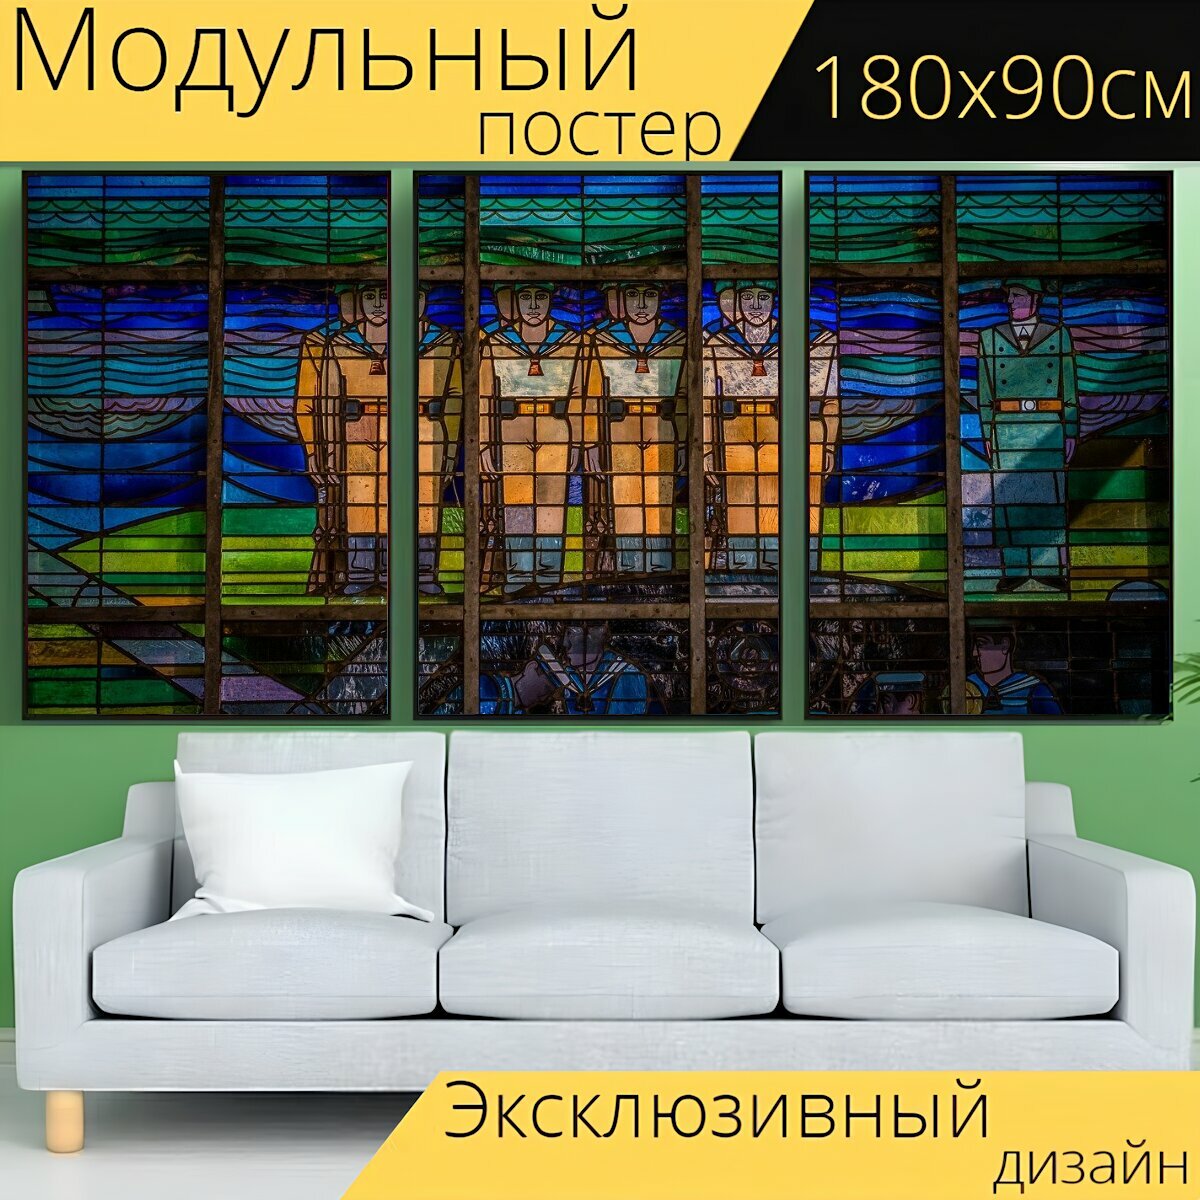 Модульный постер "Витражное окно, окно, витраж" 180 x 90 см. для интерьера